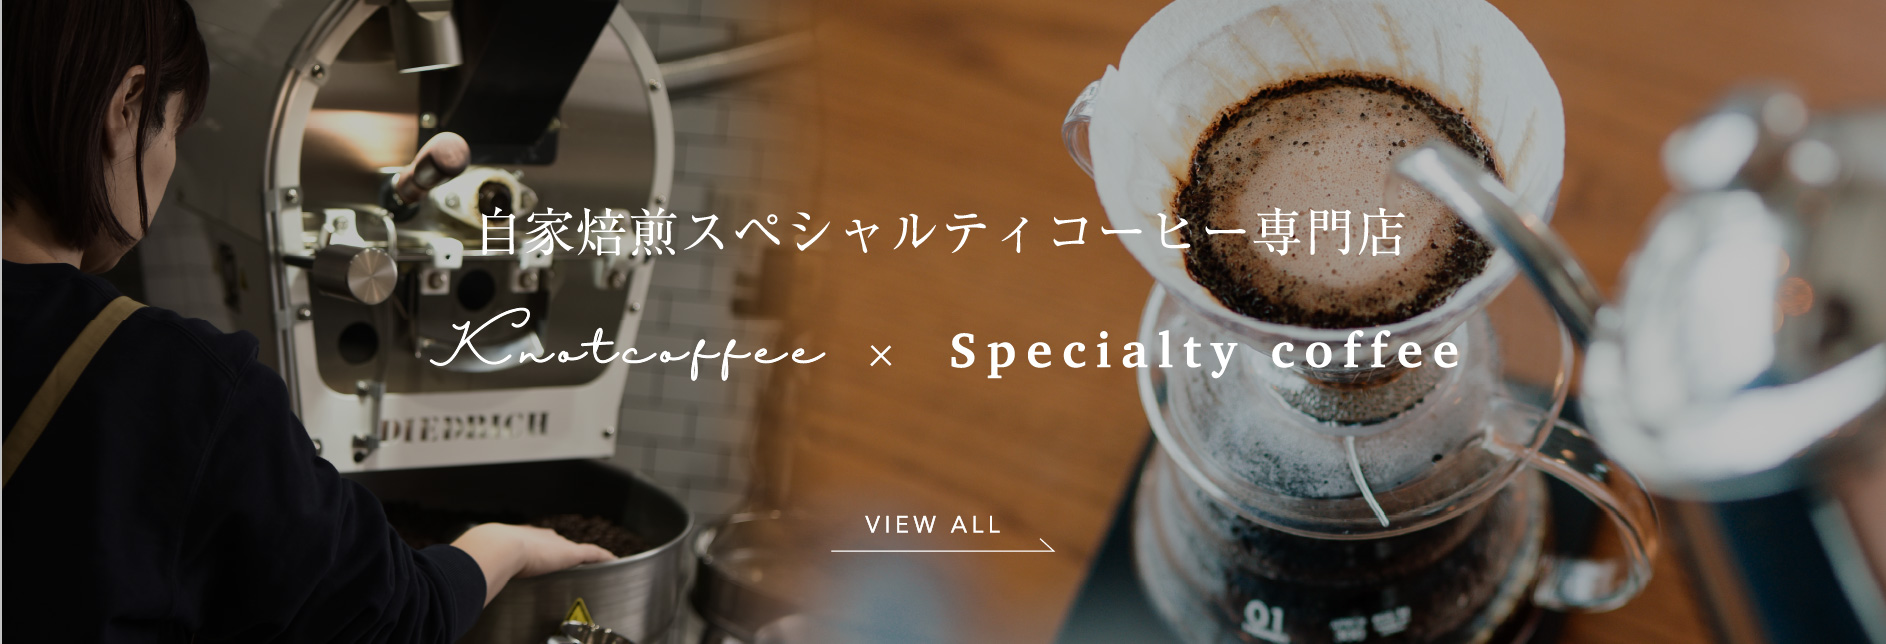 自家焙煎スペシャルティコーヒー専門店Knotcoffee×Specialty coffee